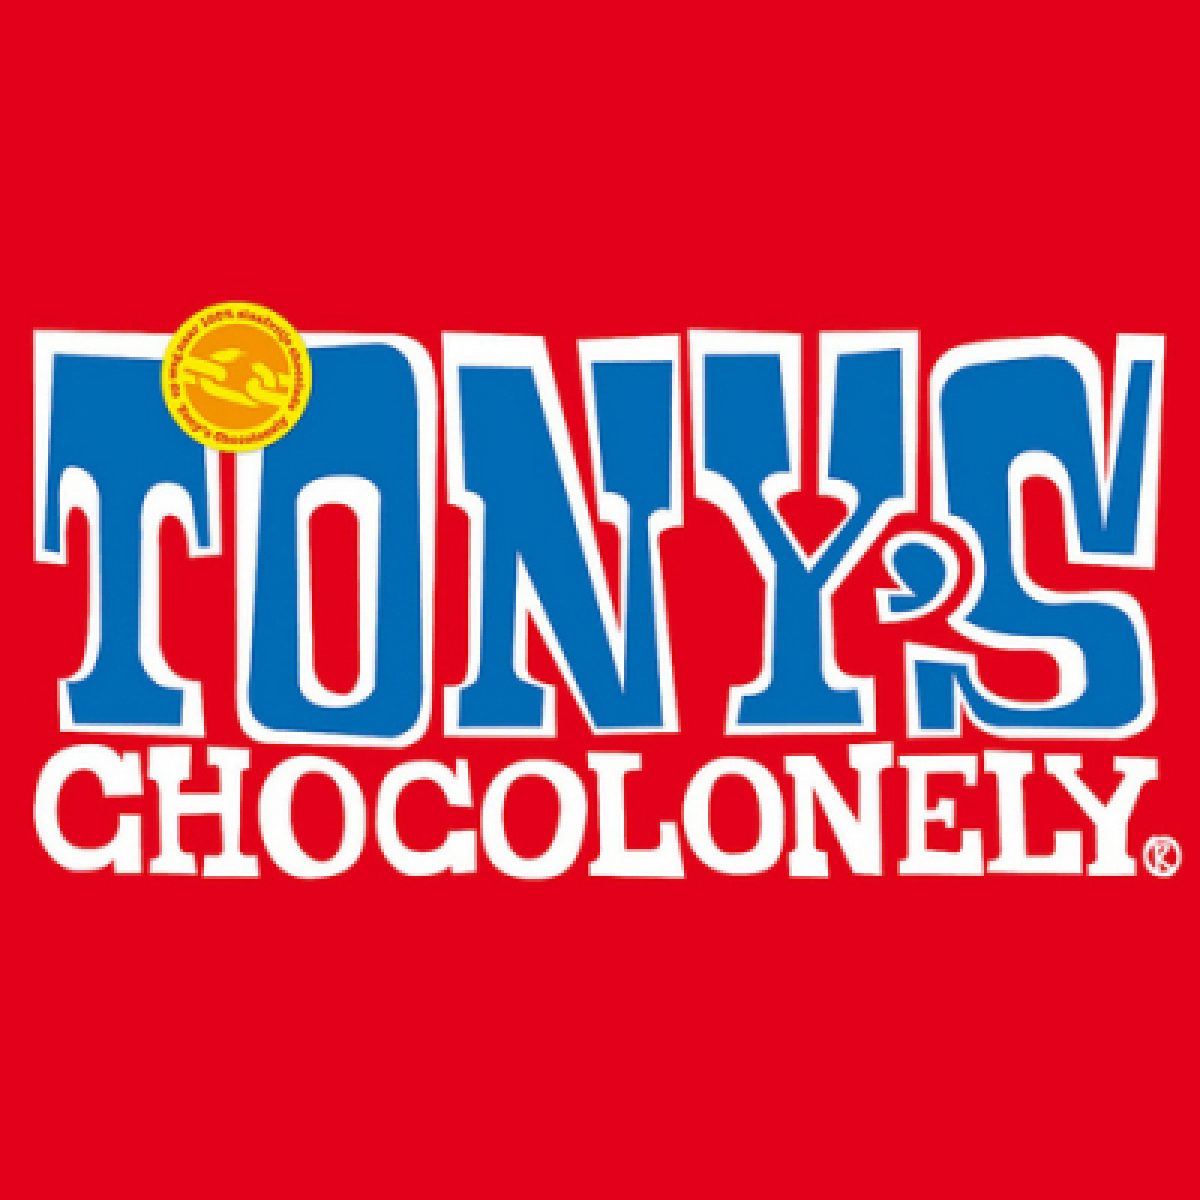 Tony's chocolonely logo